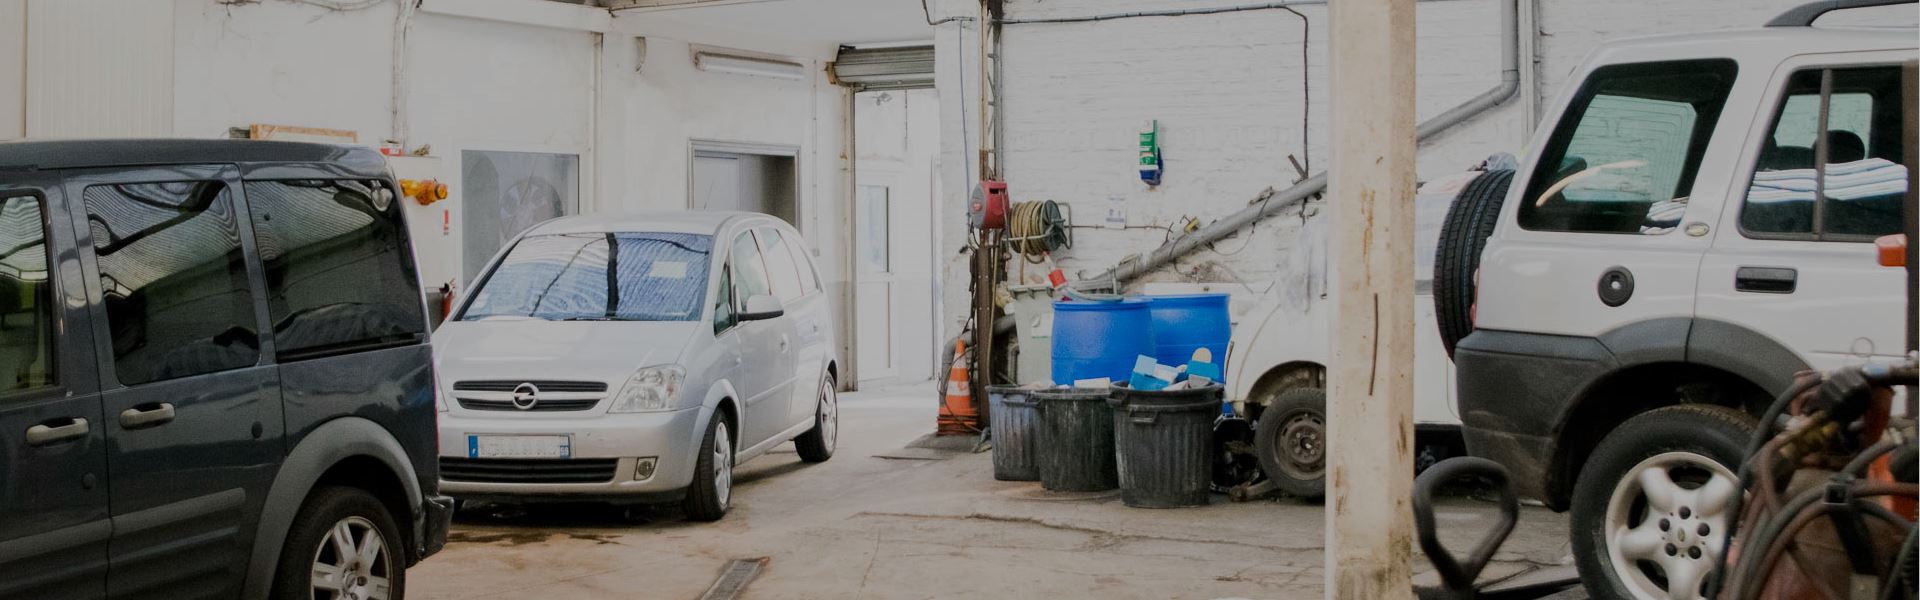 Réparation garage auto orchies - GARAGISTE AUTO ORCHIES